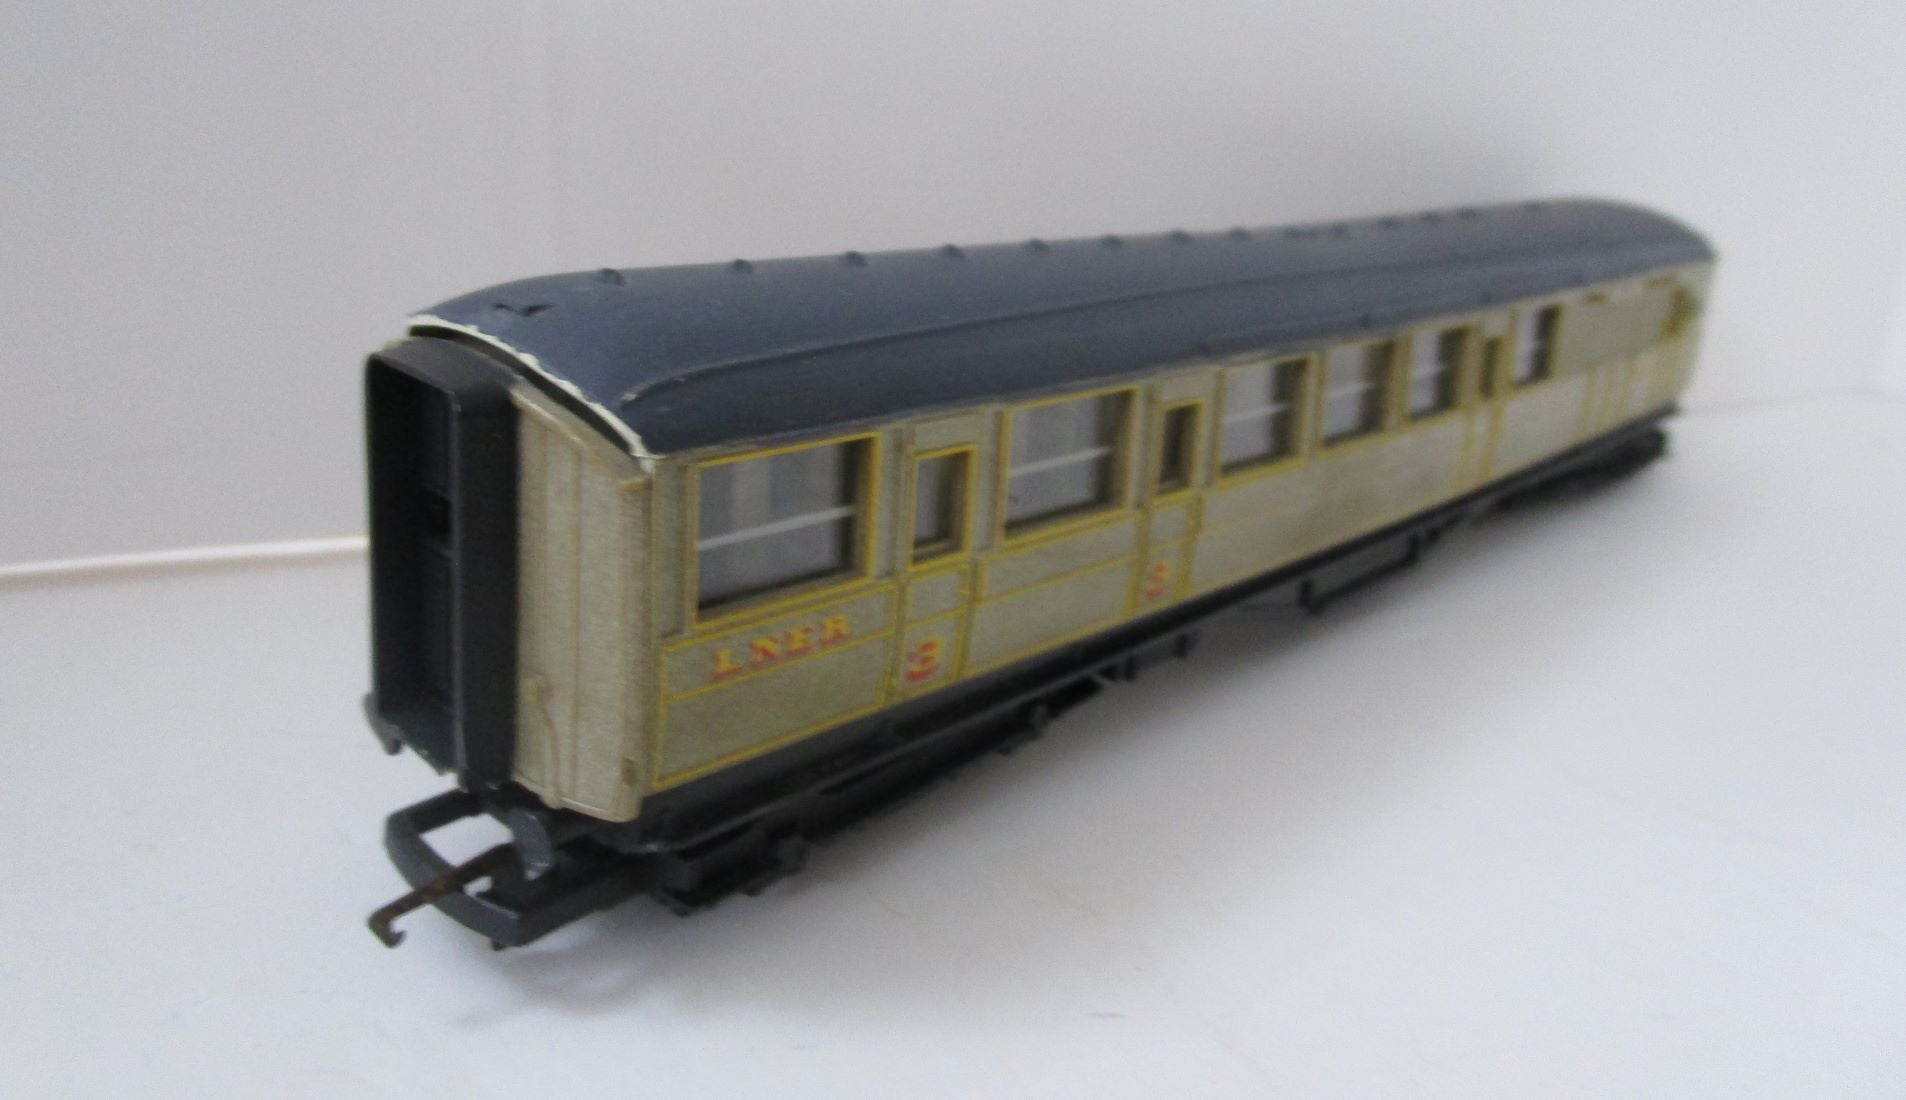 R478-P01 HORNBY LNER Gresley Brake Composite coach teak 4237 - black roof